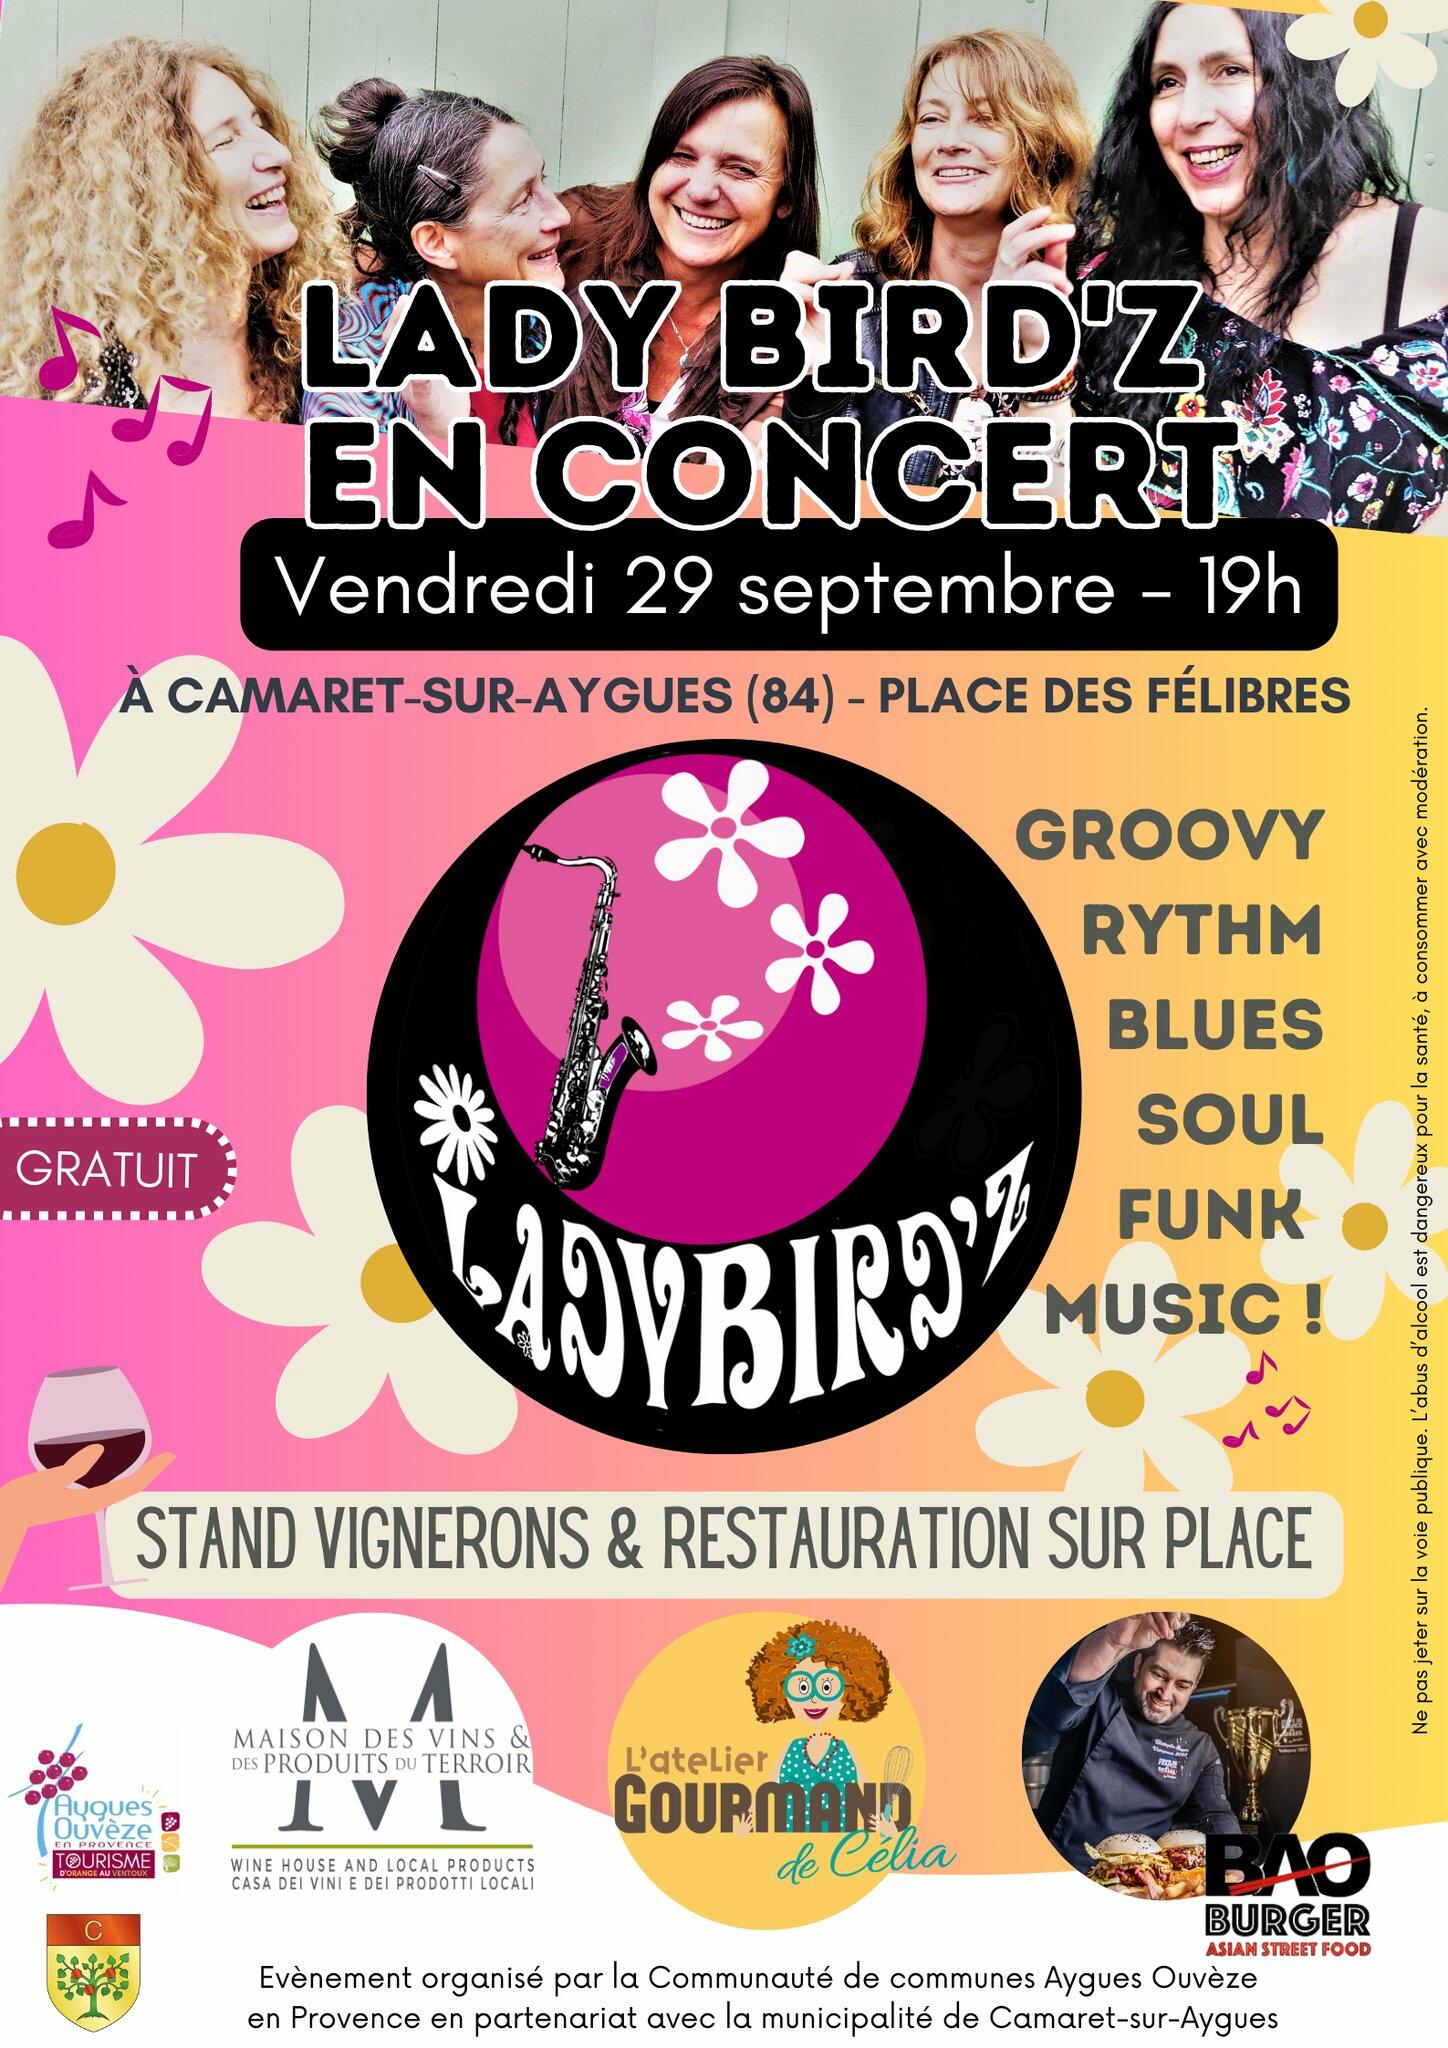 Ladybird'z en concert sur la place des Félibres le vendredi 29 septembre à 19h00